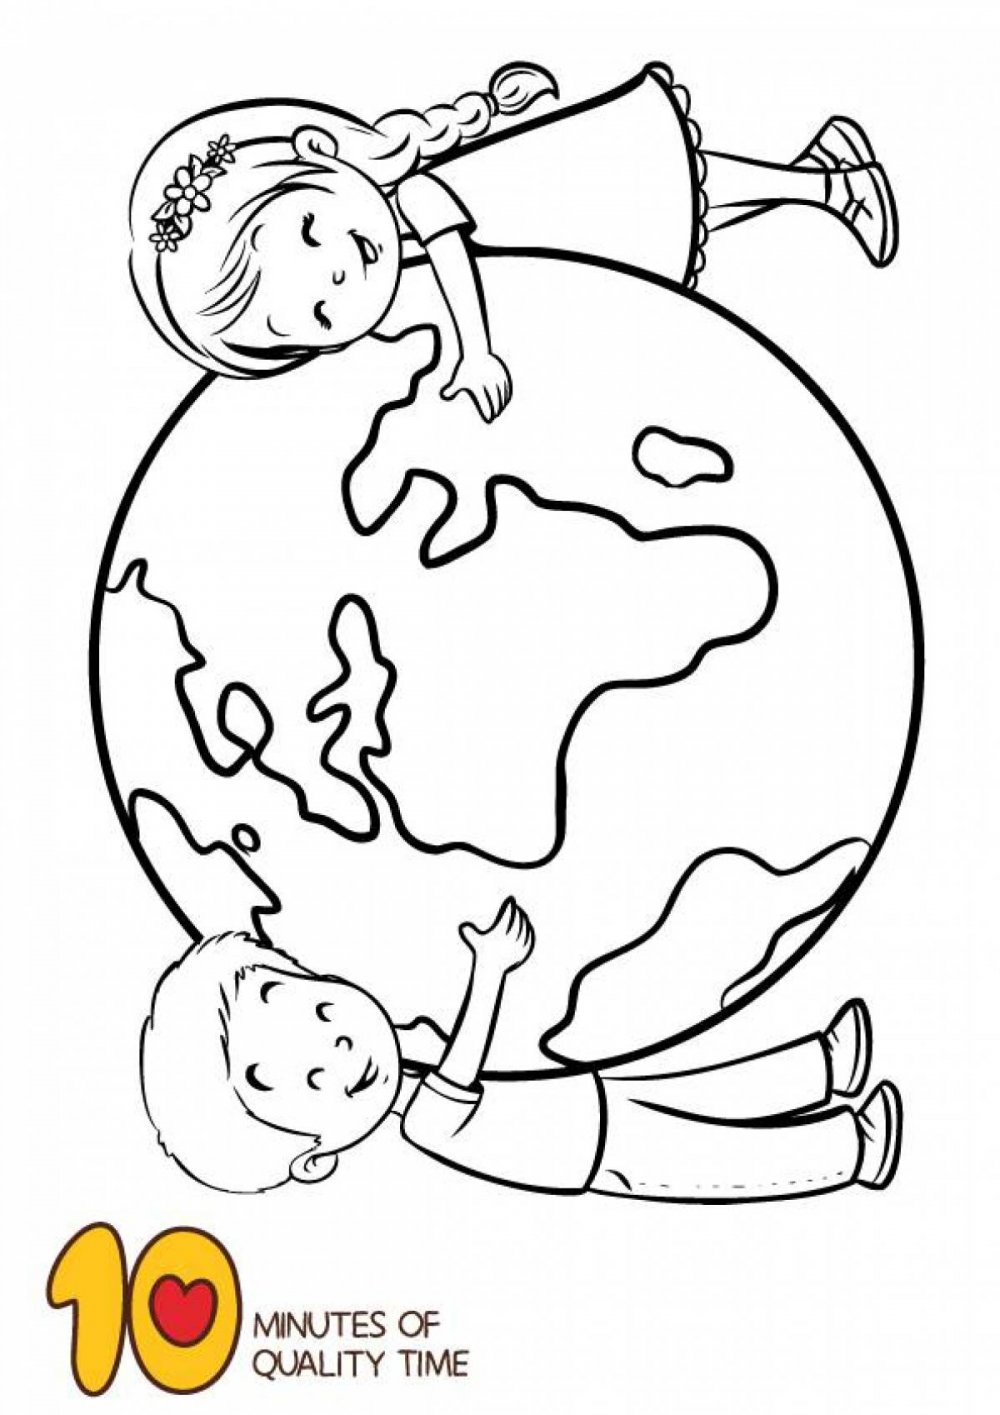 Планета земля раскраска для детей